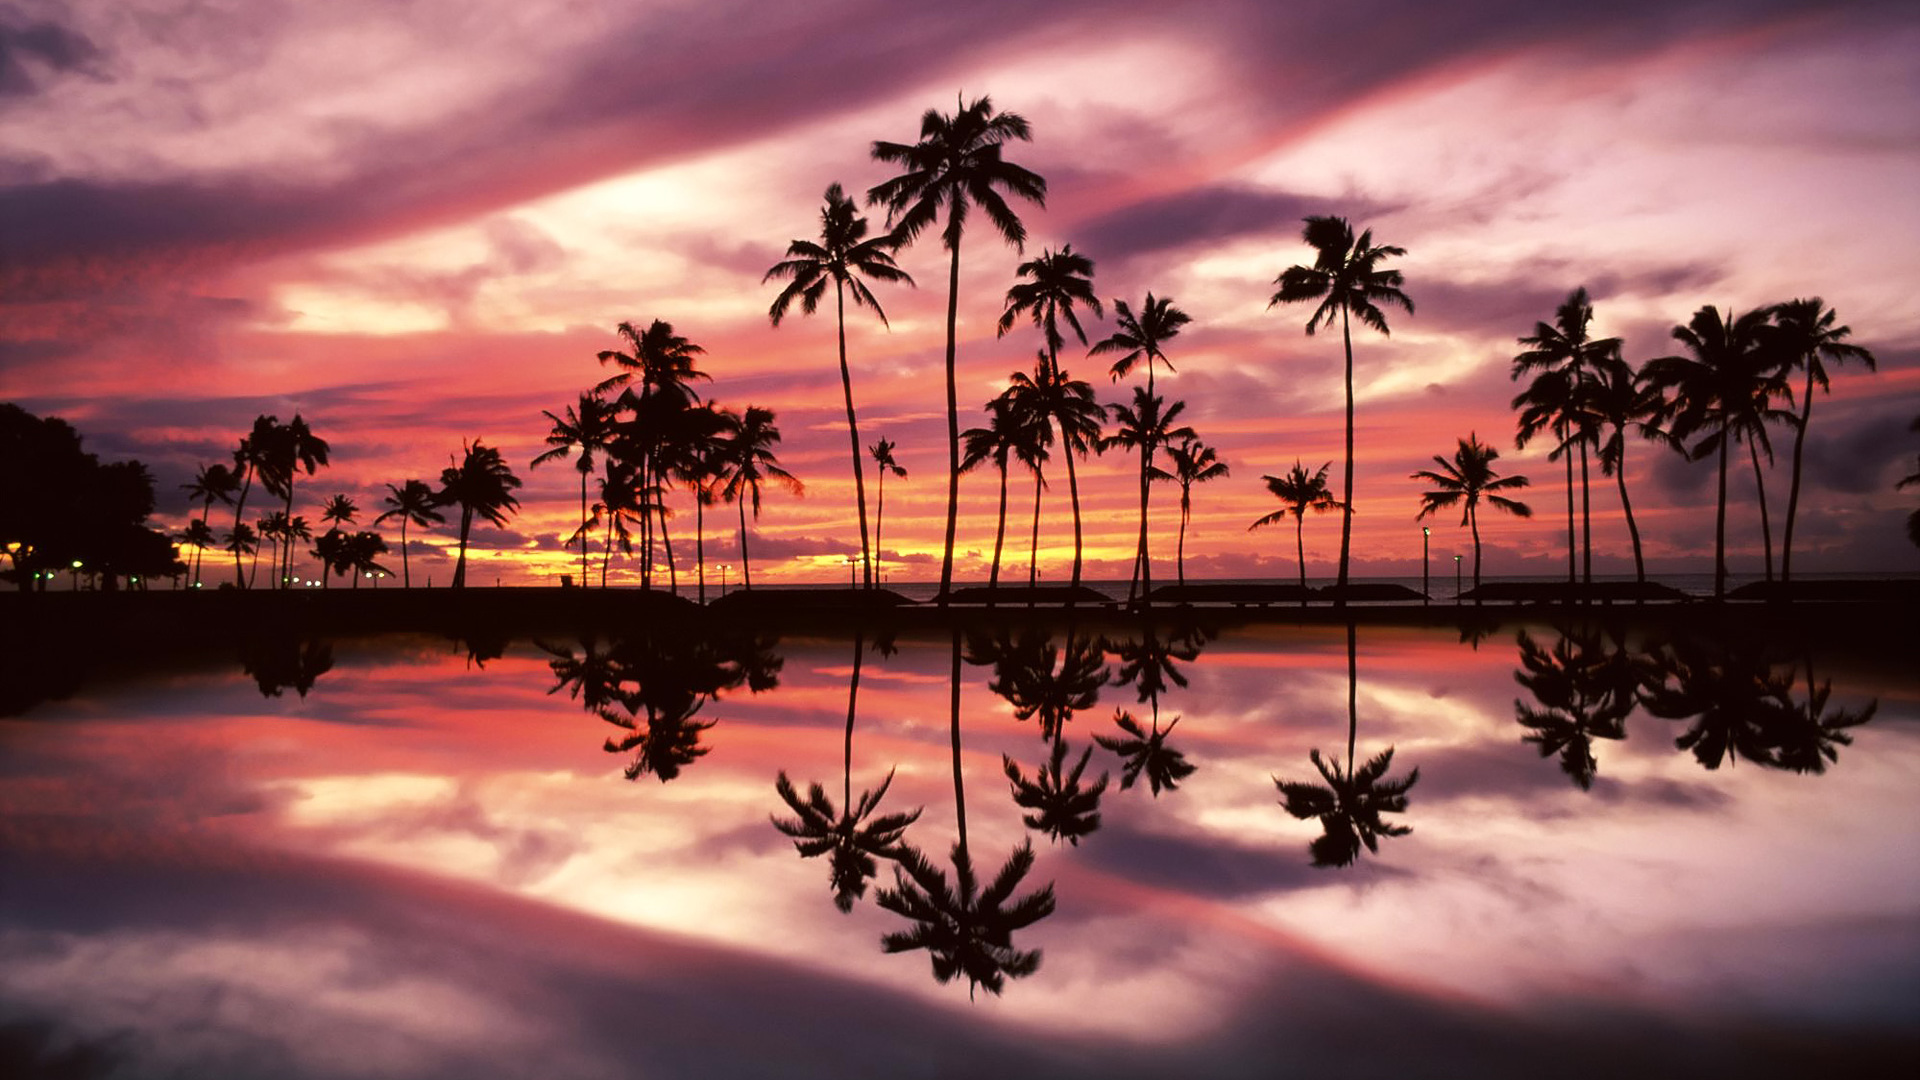 Sunset Over The Ala Moana Beach Park Honolulu Oahu Hawaii